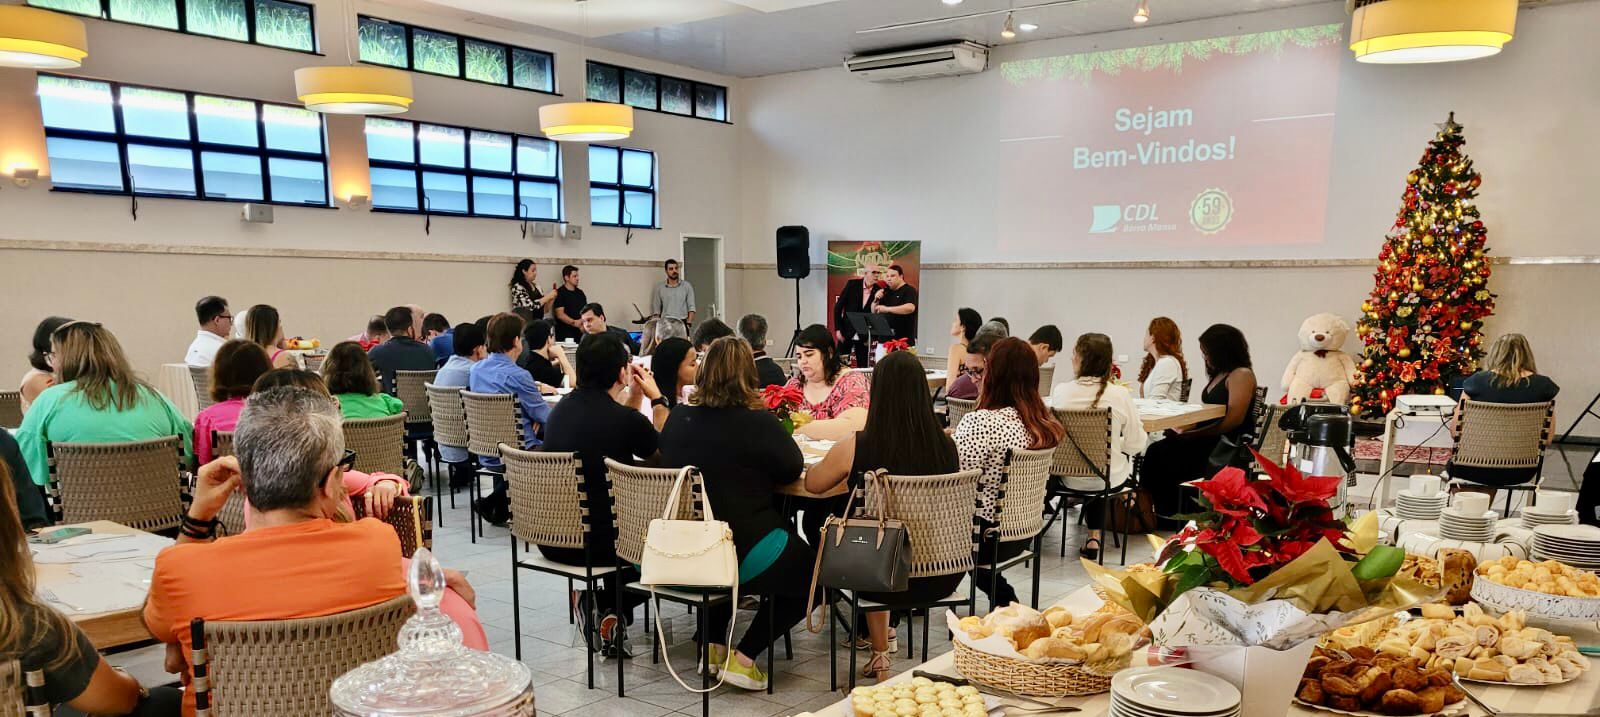 Foto -  Café da Manhã especial de Natal na CDL com homenagens, sorteios e ações da entidade